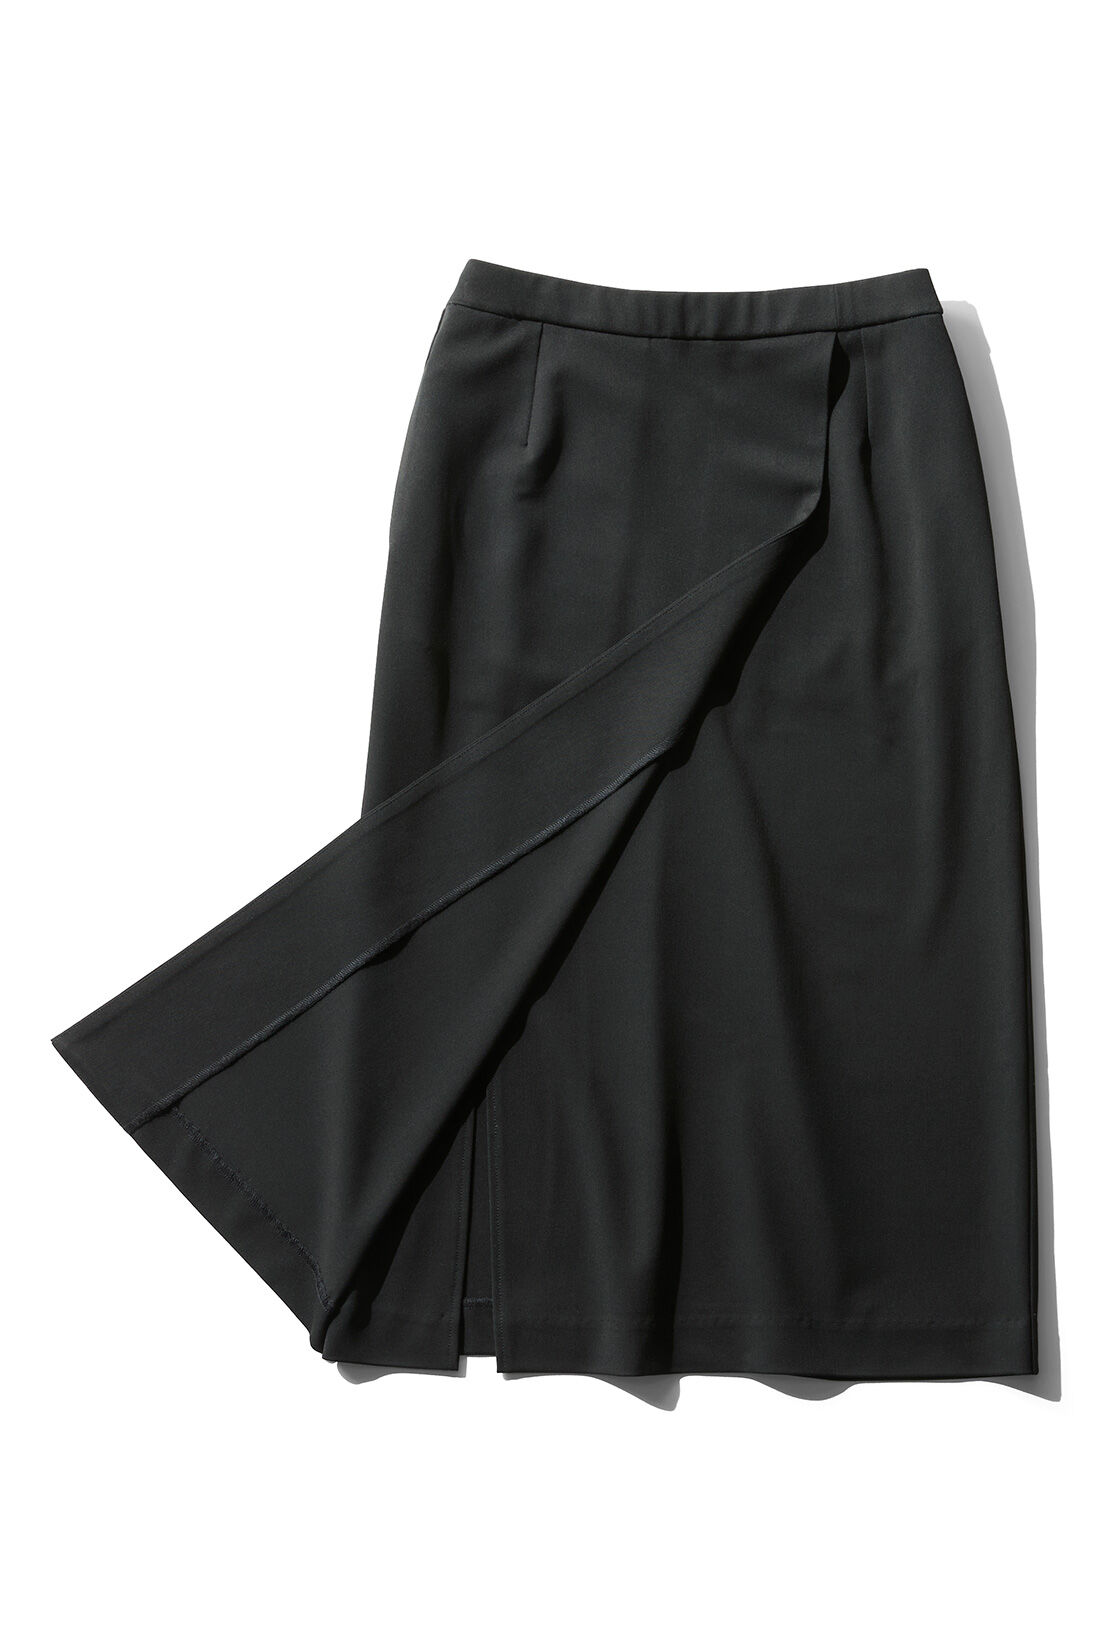 イディット|IEDIT[イディット]　いつもキレイな黒が続く オンオフ万能純黒デザインスカート〈ブラック〉